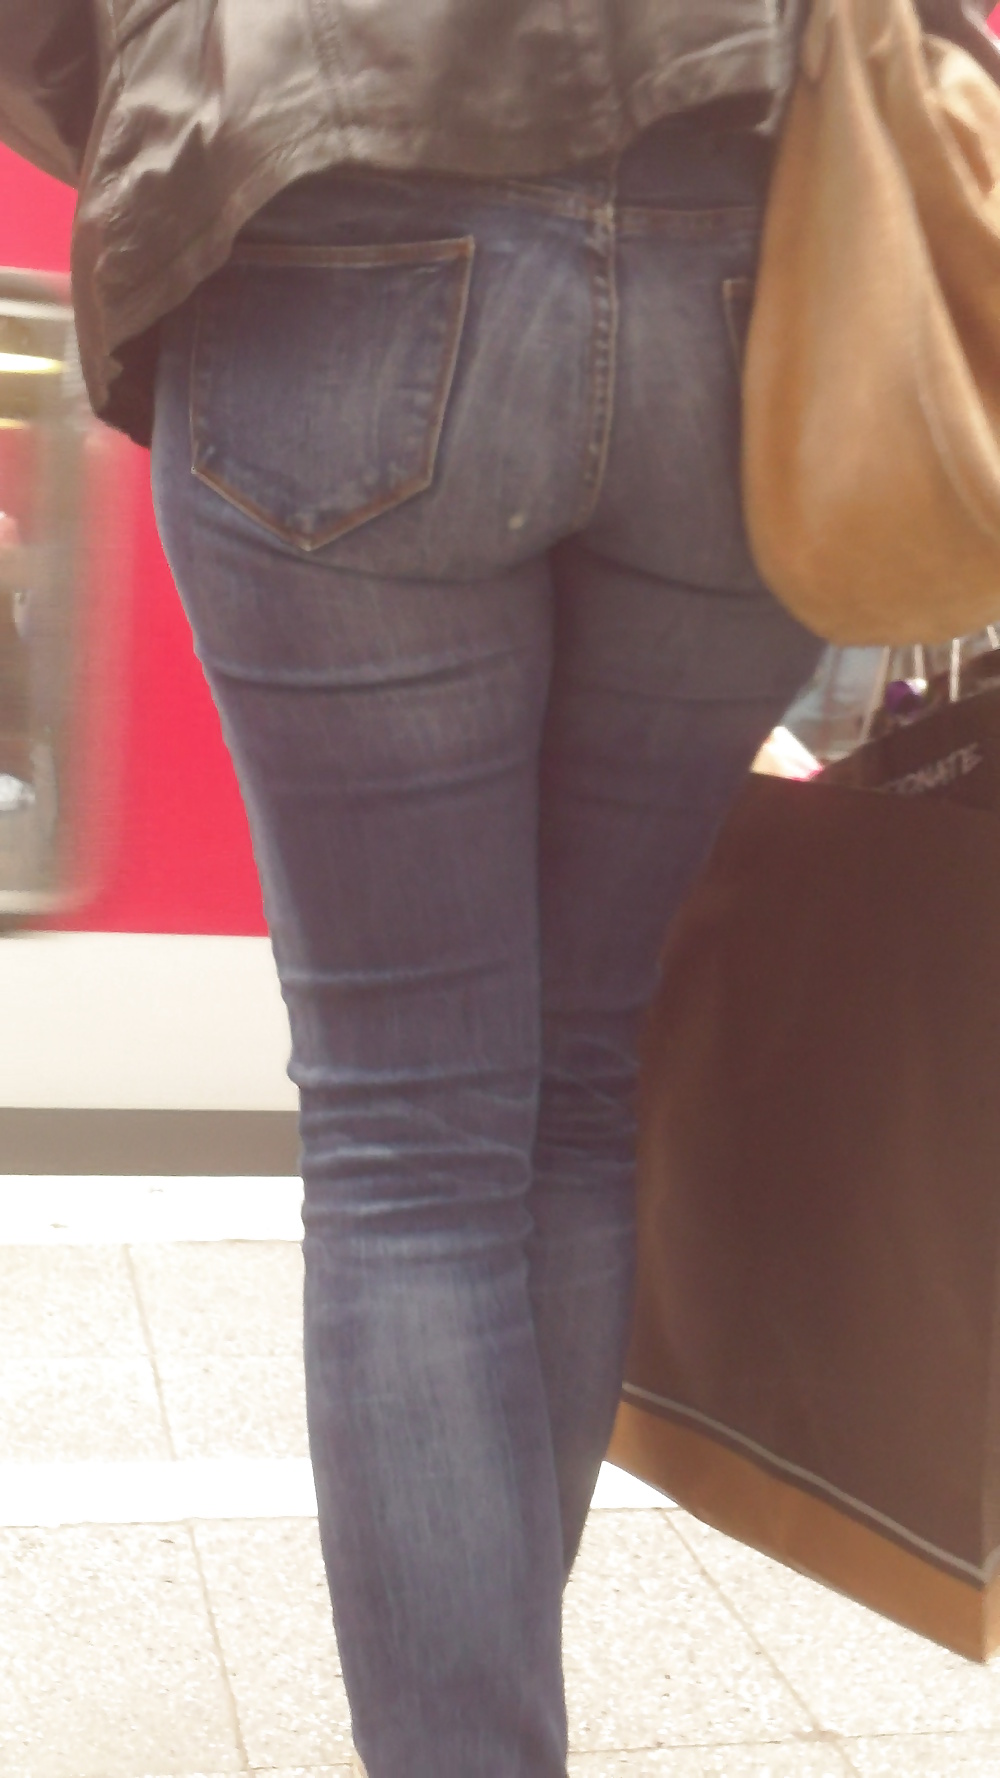 Popular teen girls ass & butt in jeans Part 6 #32010330